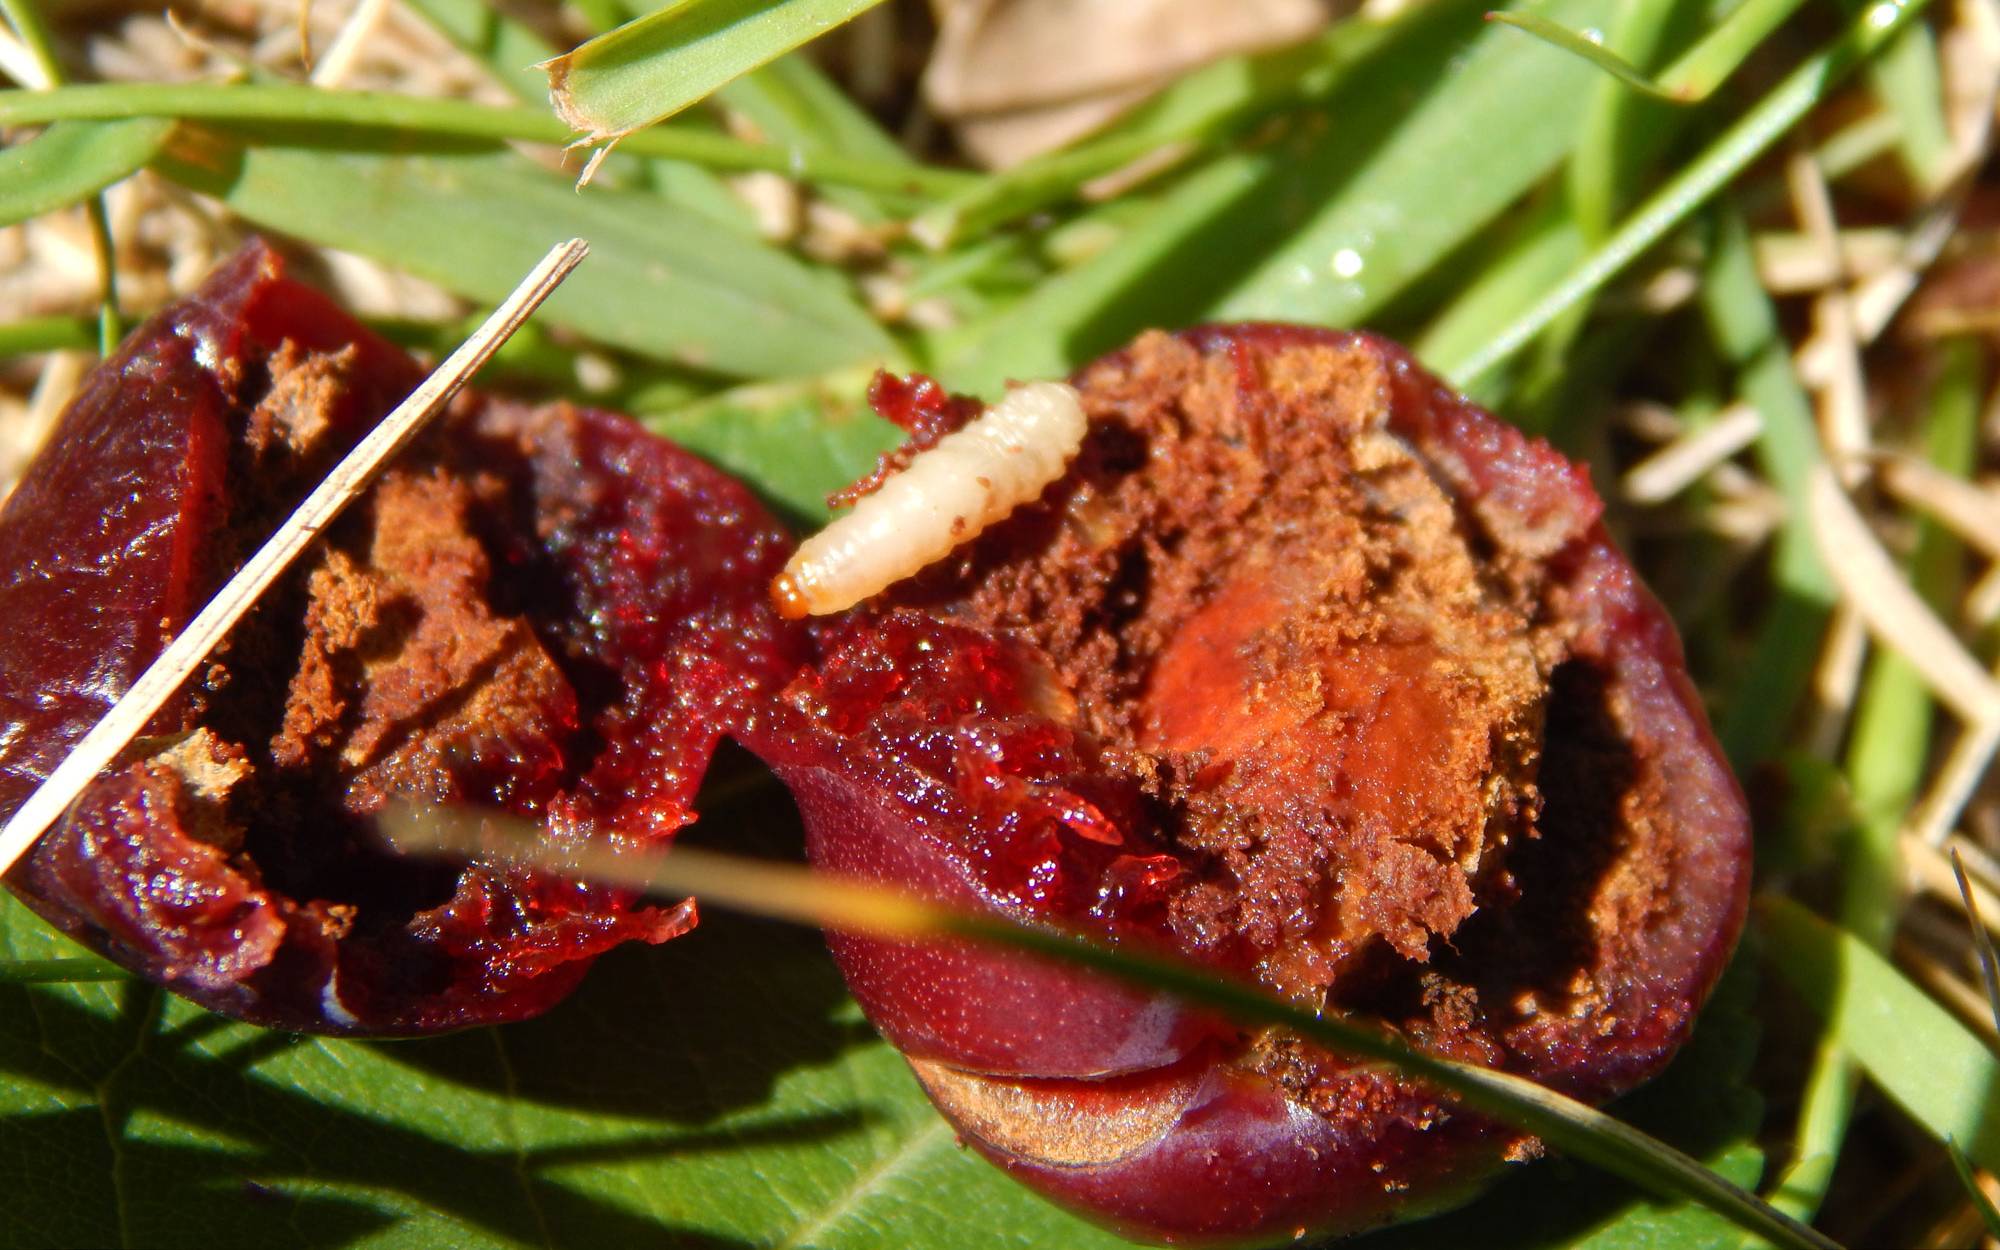  Plum curculio larvae in a rotting cherry